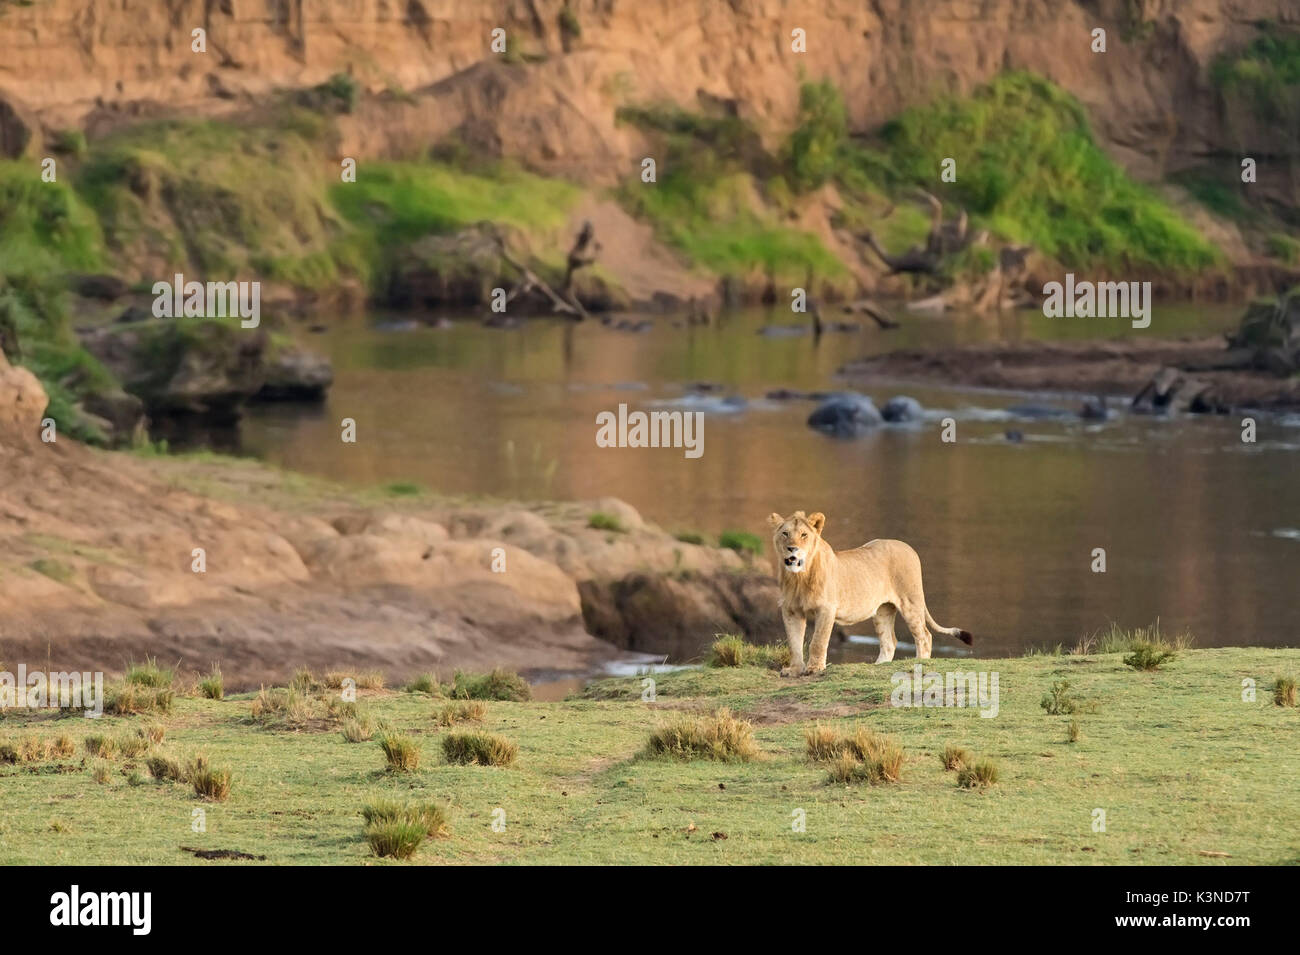 Parc de Masai Mara, Kenya, Afrique un jeune mâle lion pris dans le parc du Masai Mara. Dans l'arrière-plan une rivière avec des hippopotames Banque D'Images